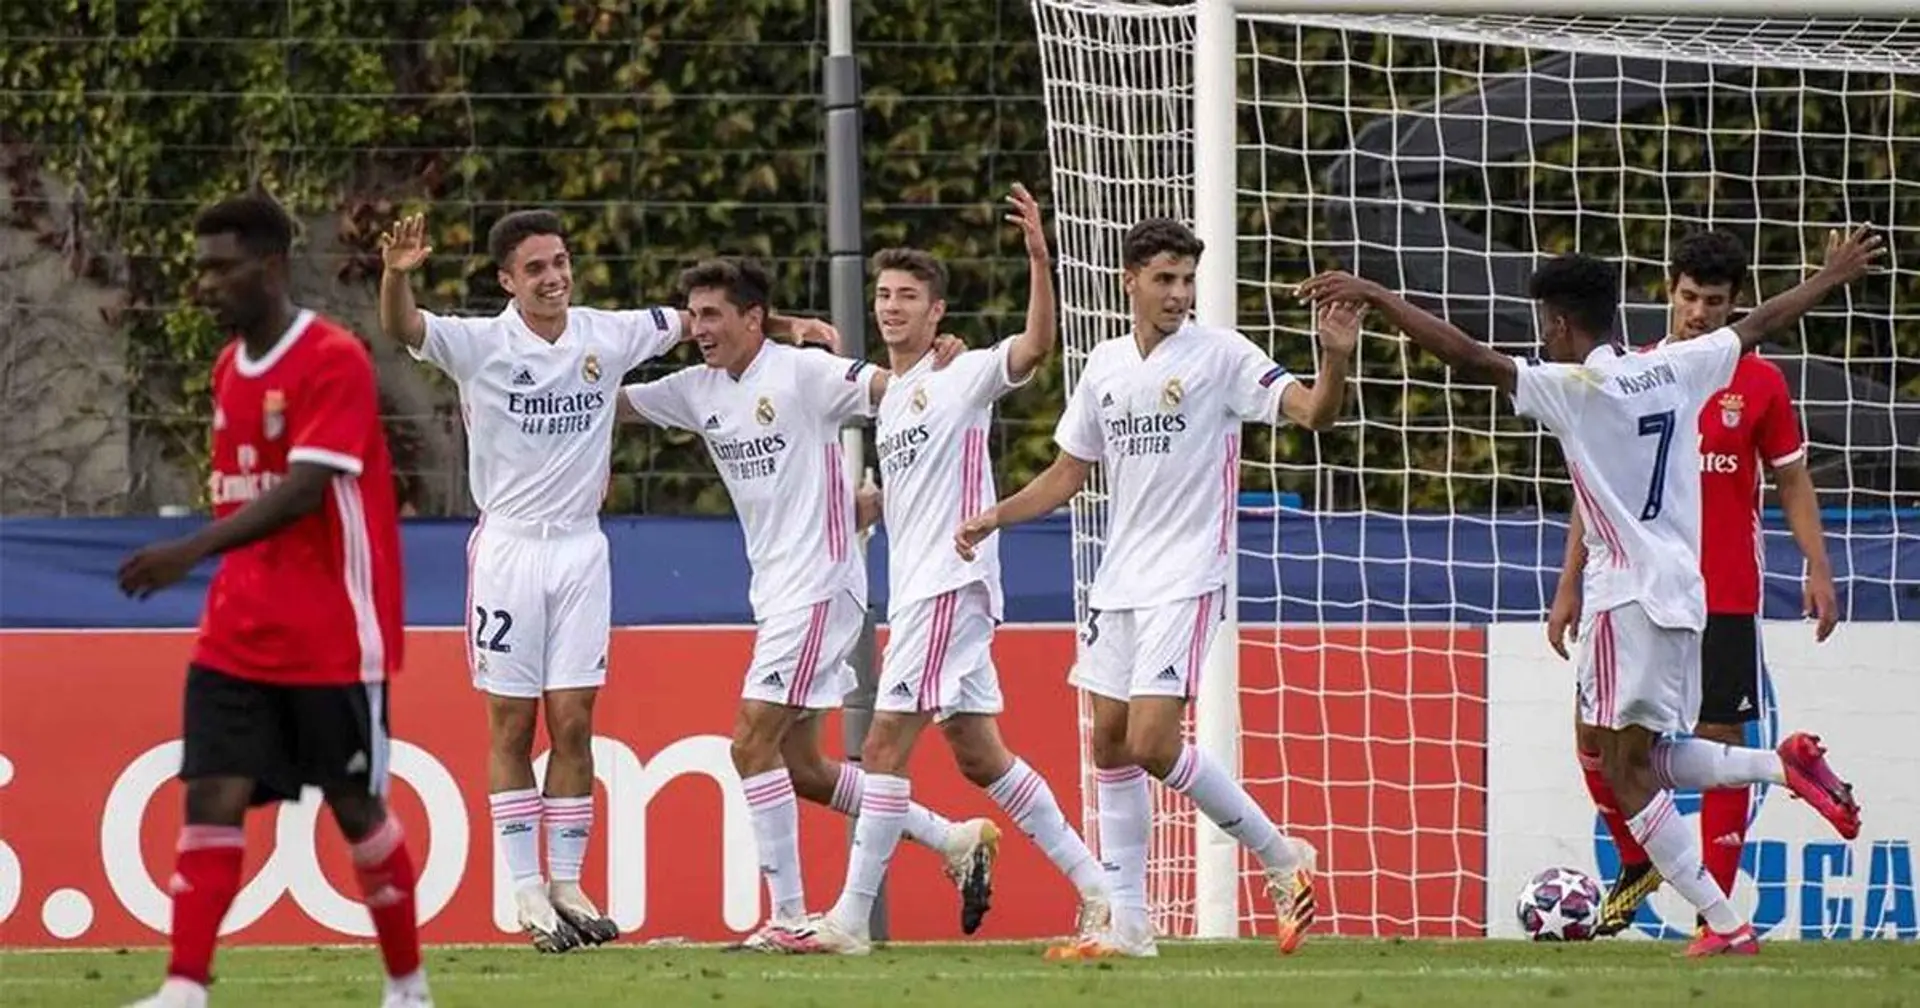 OFFICIEL: Le Real Madrid Castilla remporte l'UEFA Youth League pour la première fois après avoir battu le Benfica U-19 